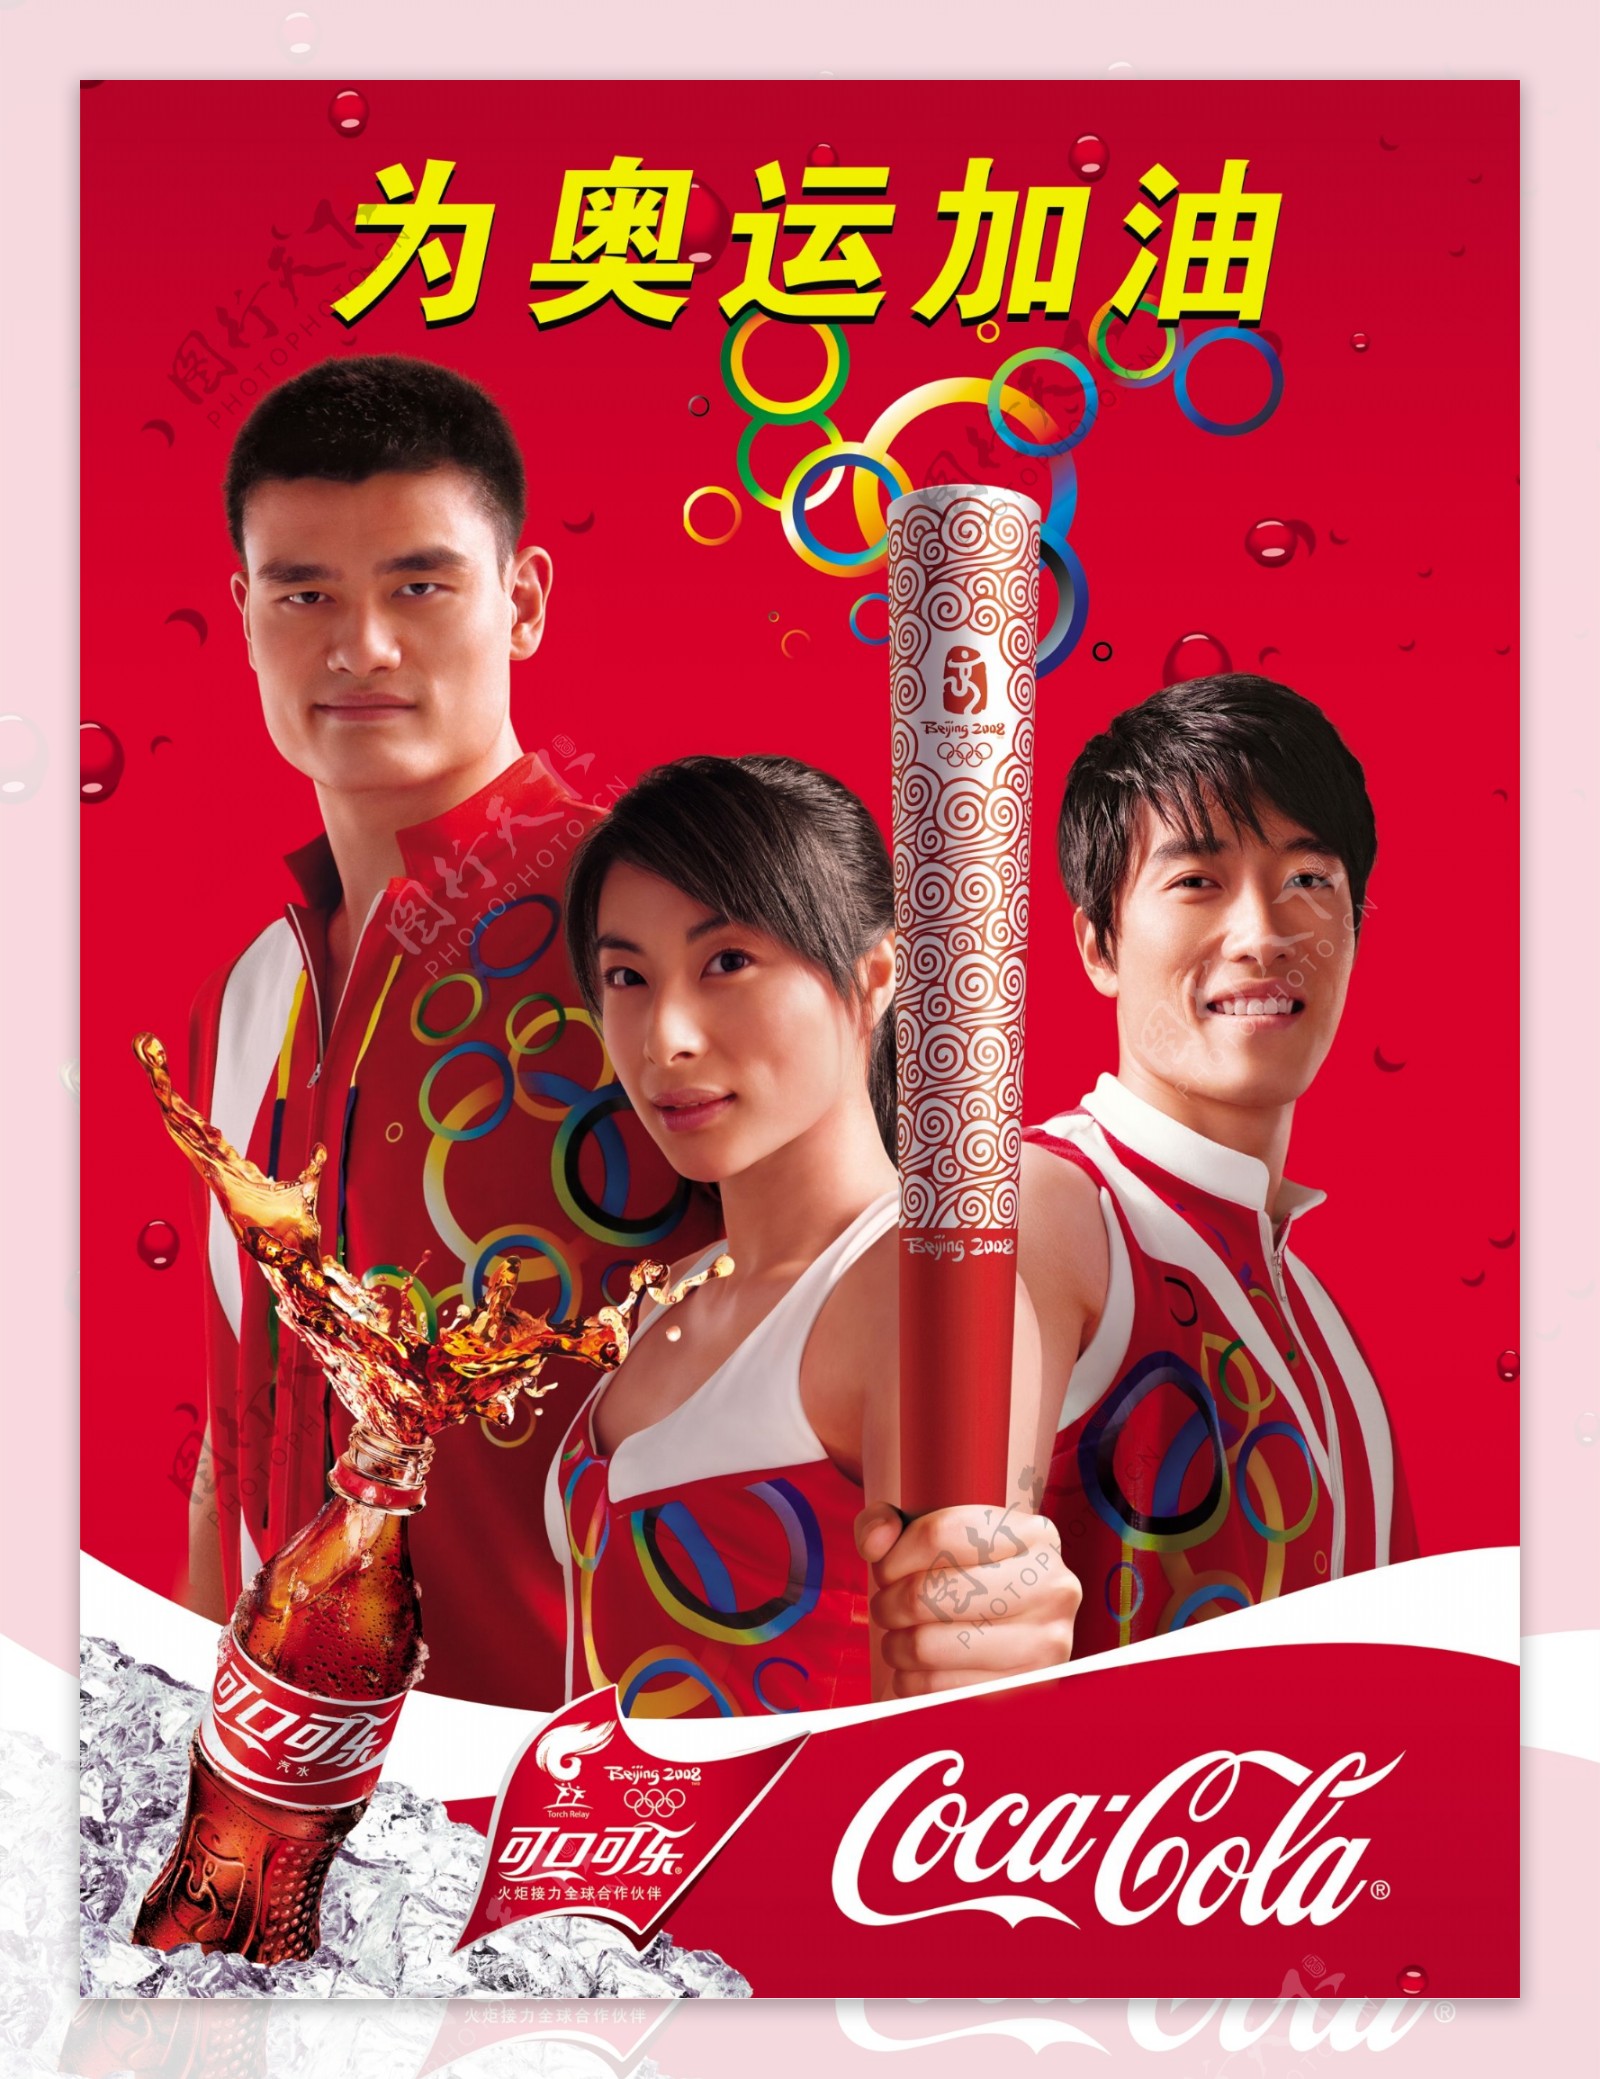 可口可乐奥运吊旗图片